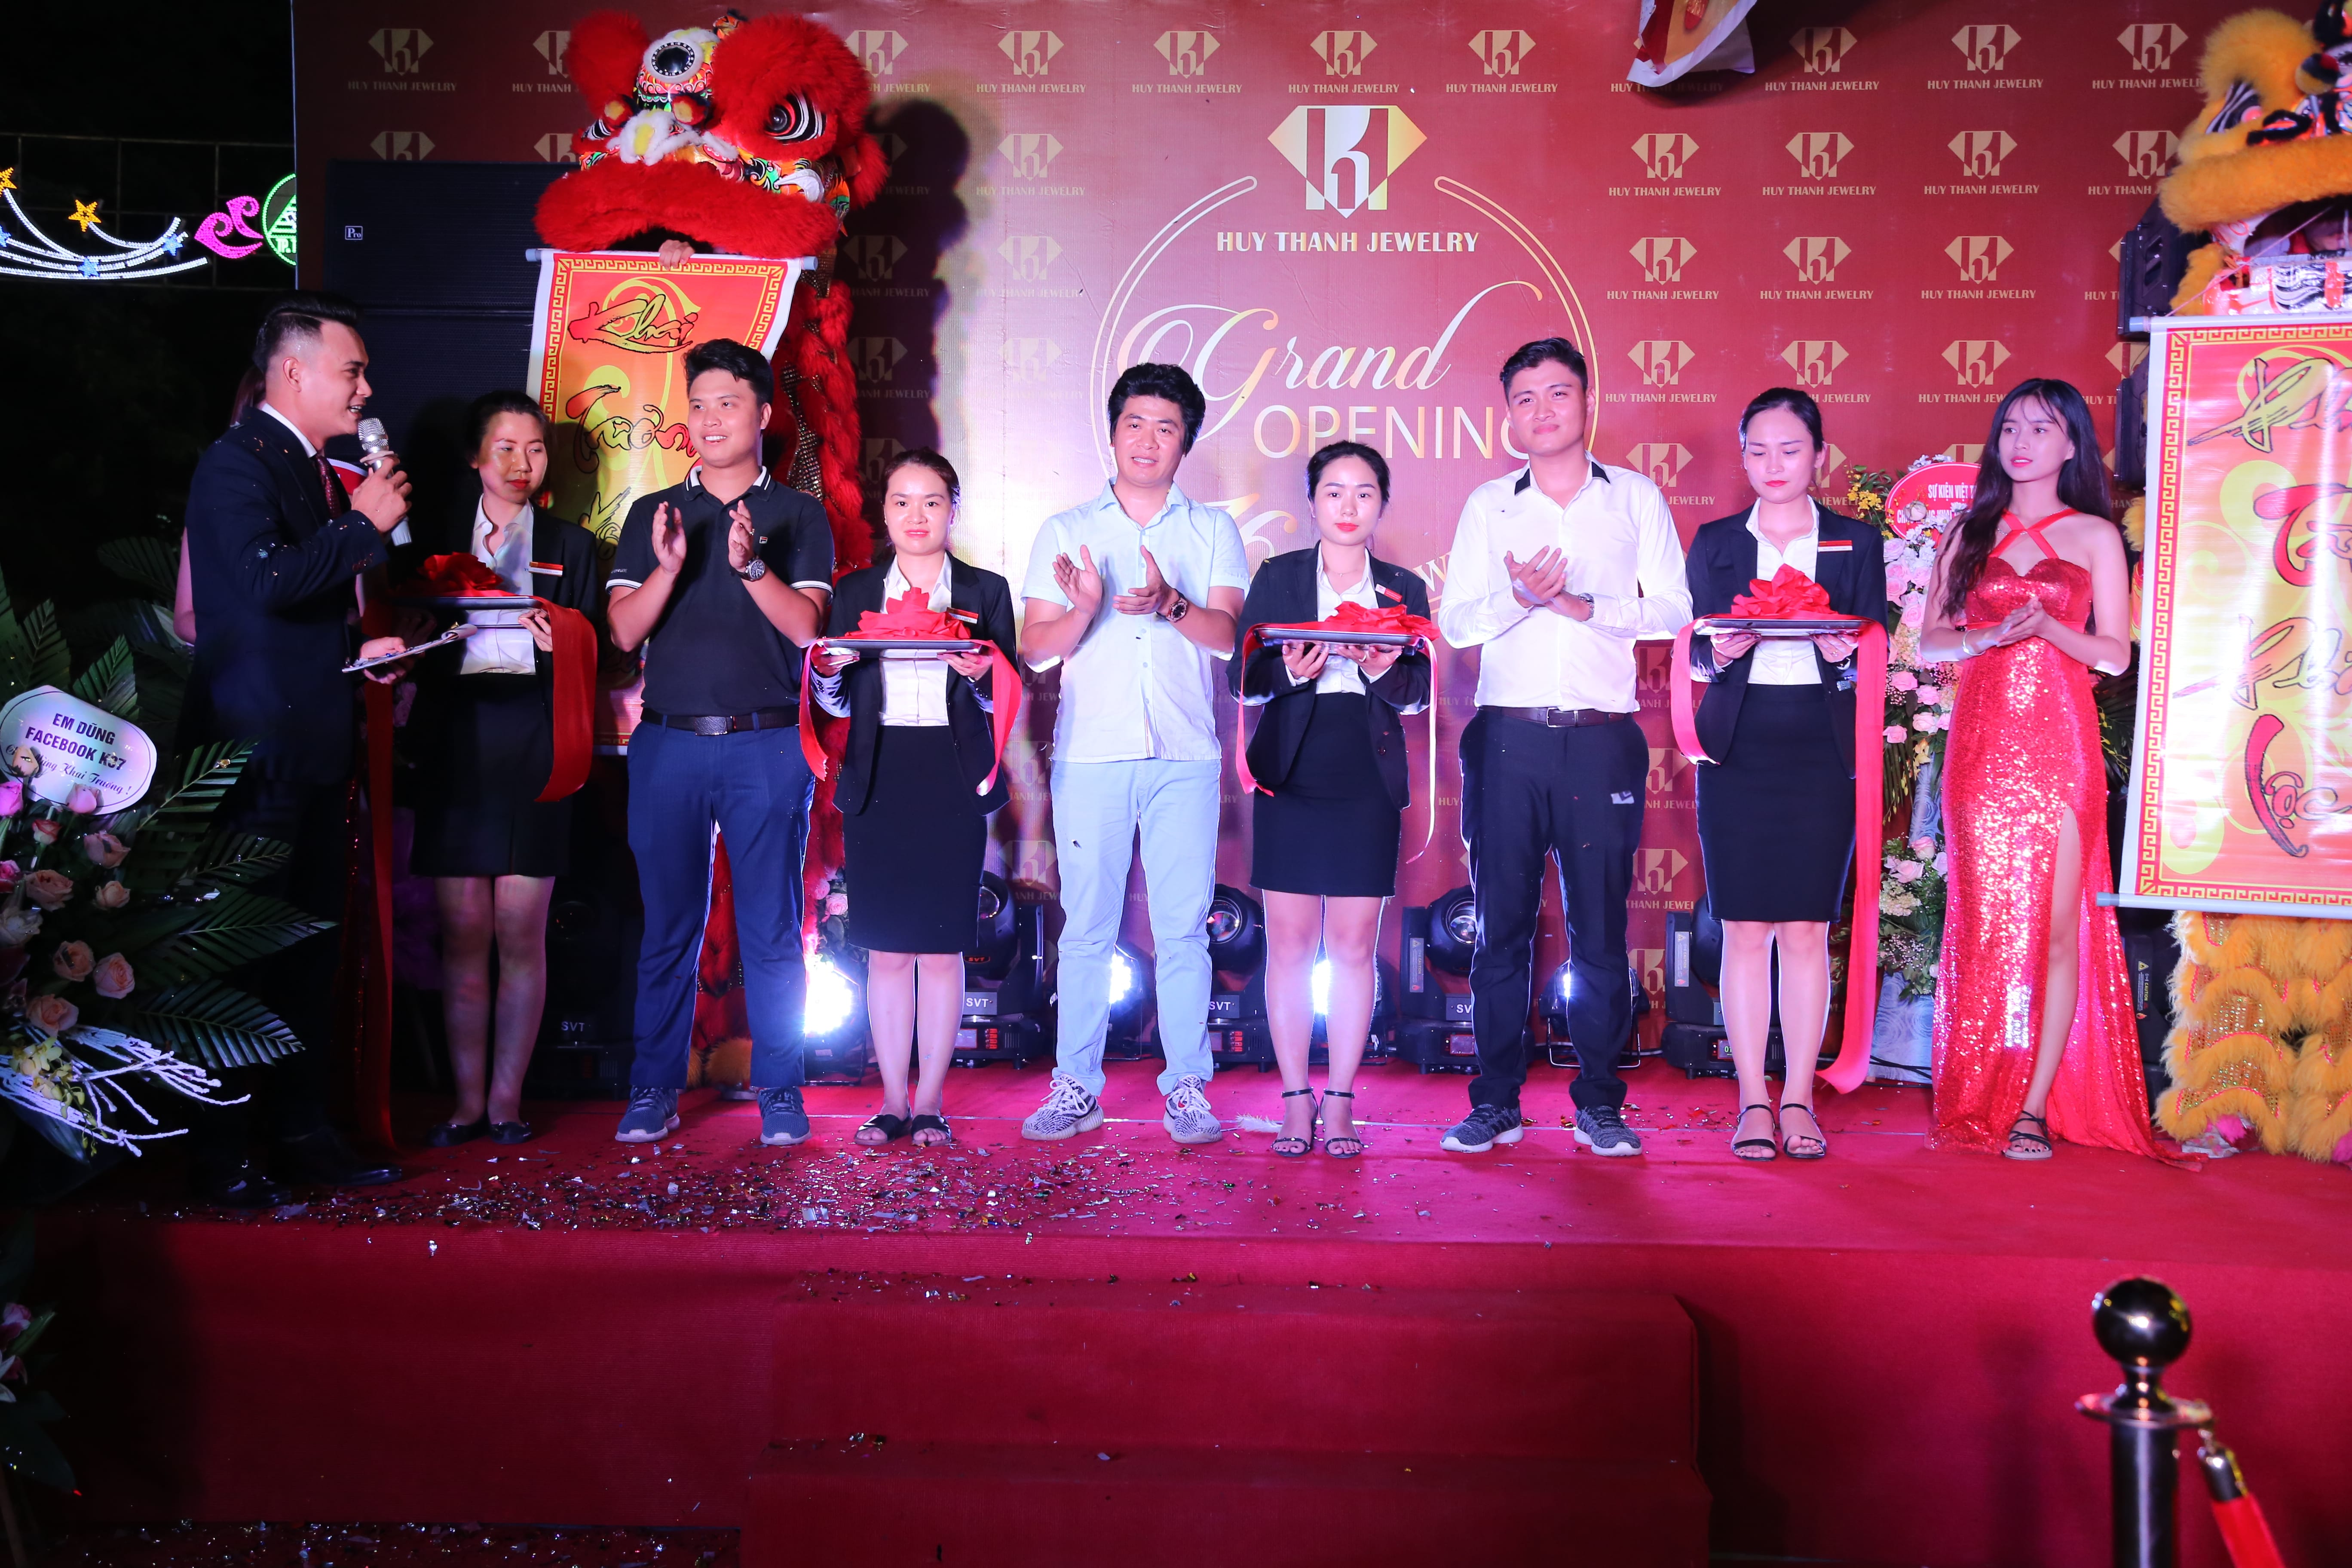 Giới trẻ Thái Nguyên hân hoan chào đón sự kiện khai trương Huy Thanh Jewelry